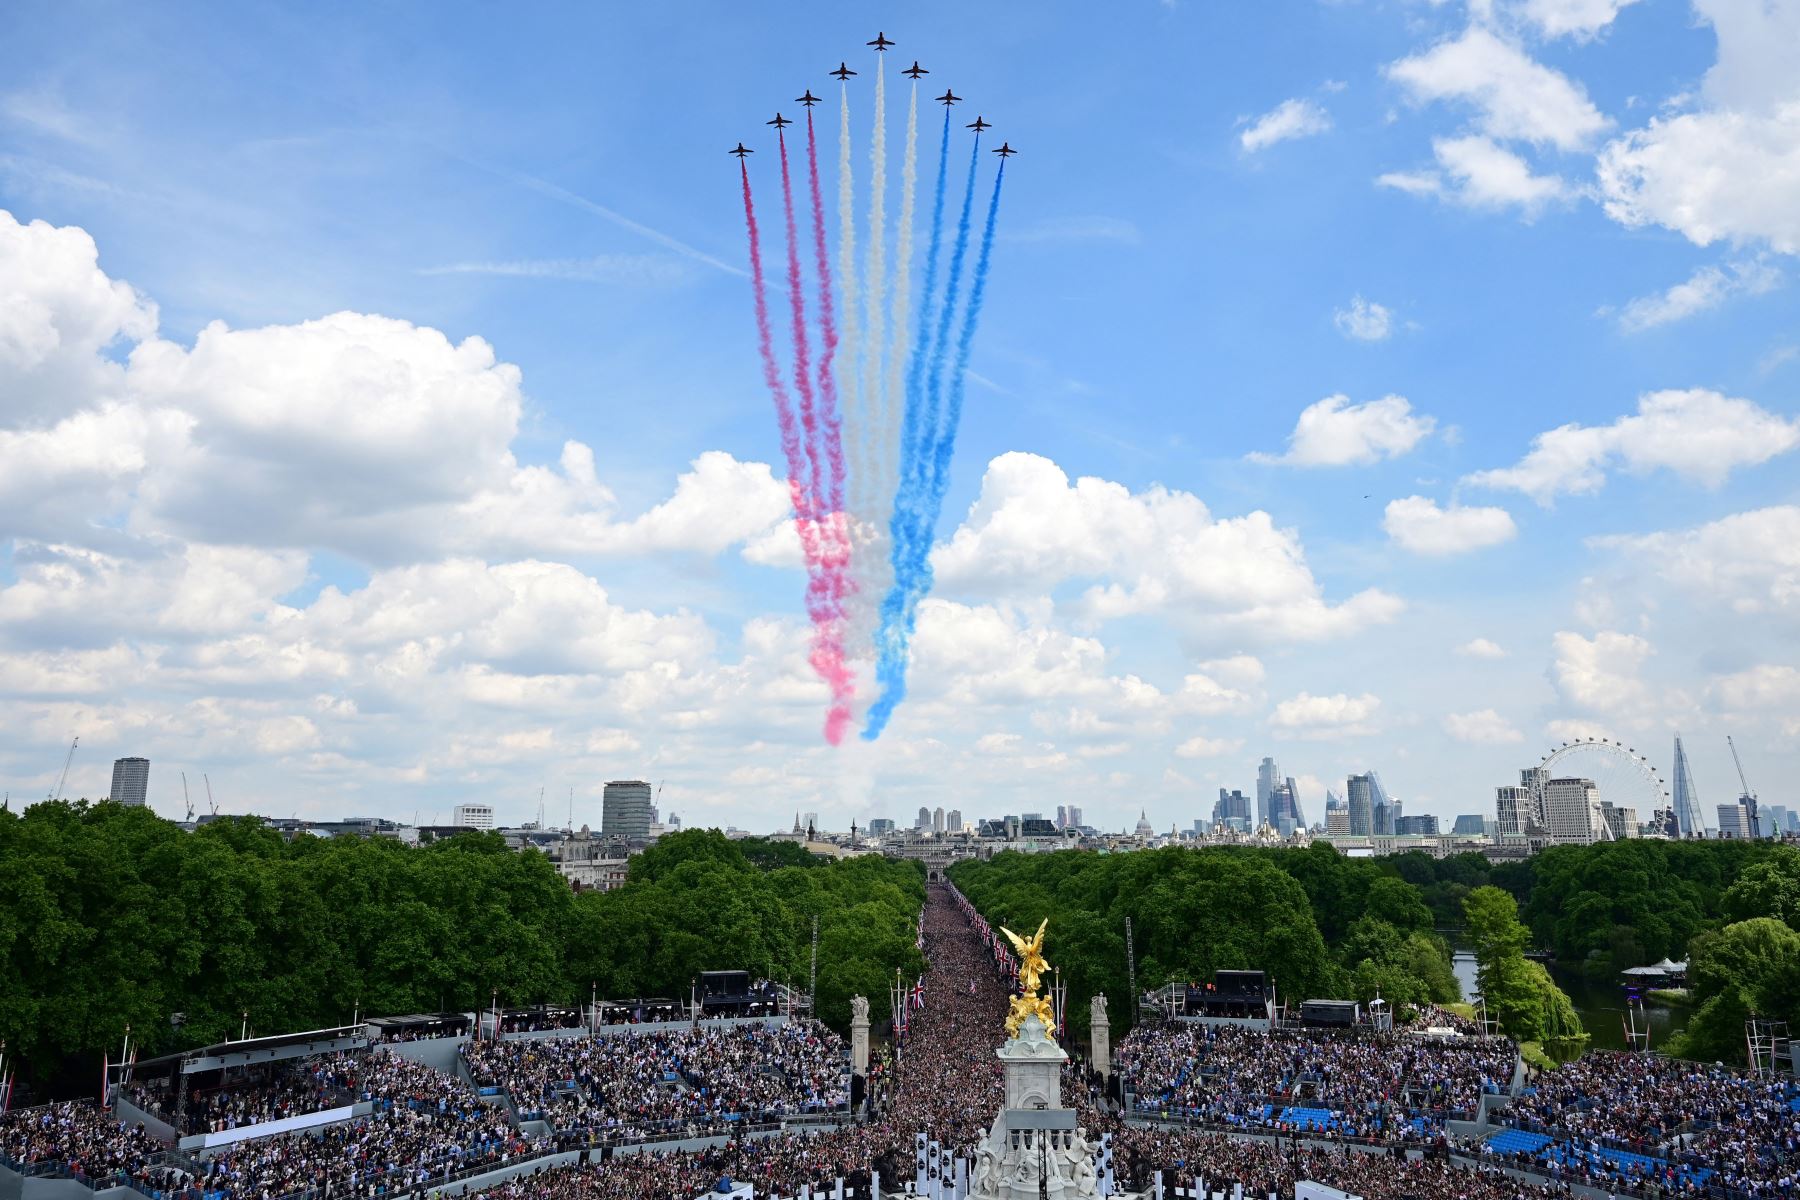 El equipo acrobático de la Royal Air Force, vuelan en formación durante un vuelo especial desde el balcón del Palacio de Buckingham después del desfile del cumpleaños de la reina, Trooping the Colour, como parte de las celebraciones del jubileo de platino de la reina Isabel II, en Londres. Foto: AFP